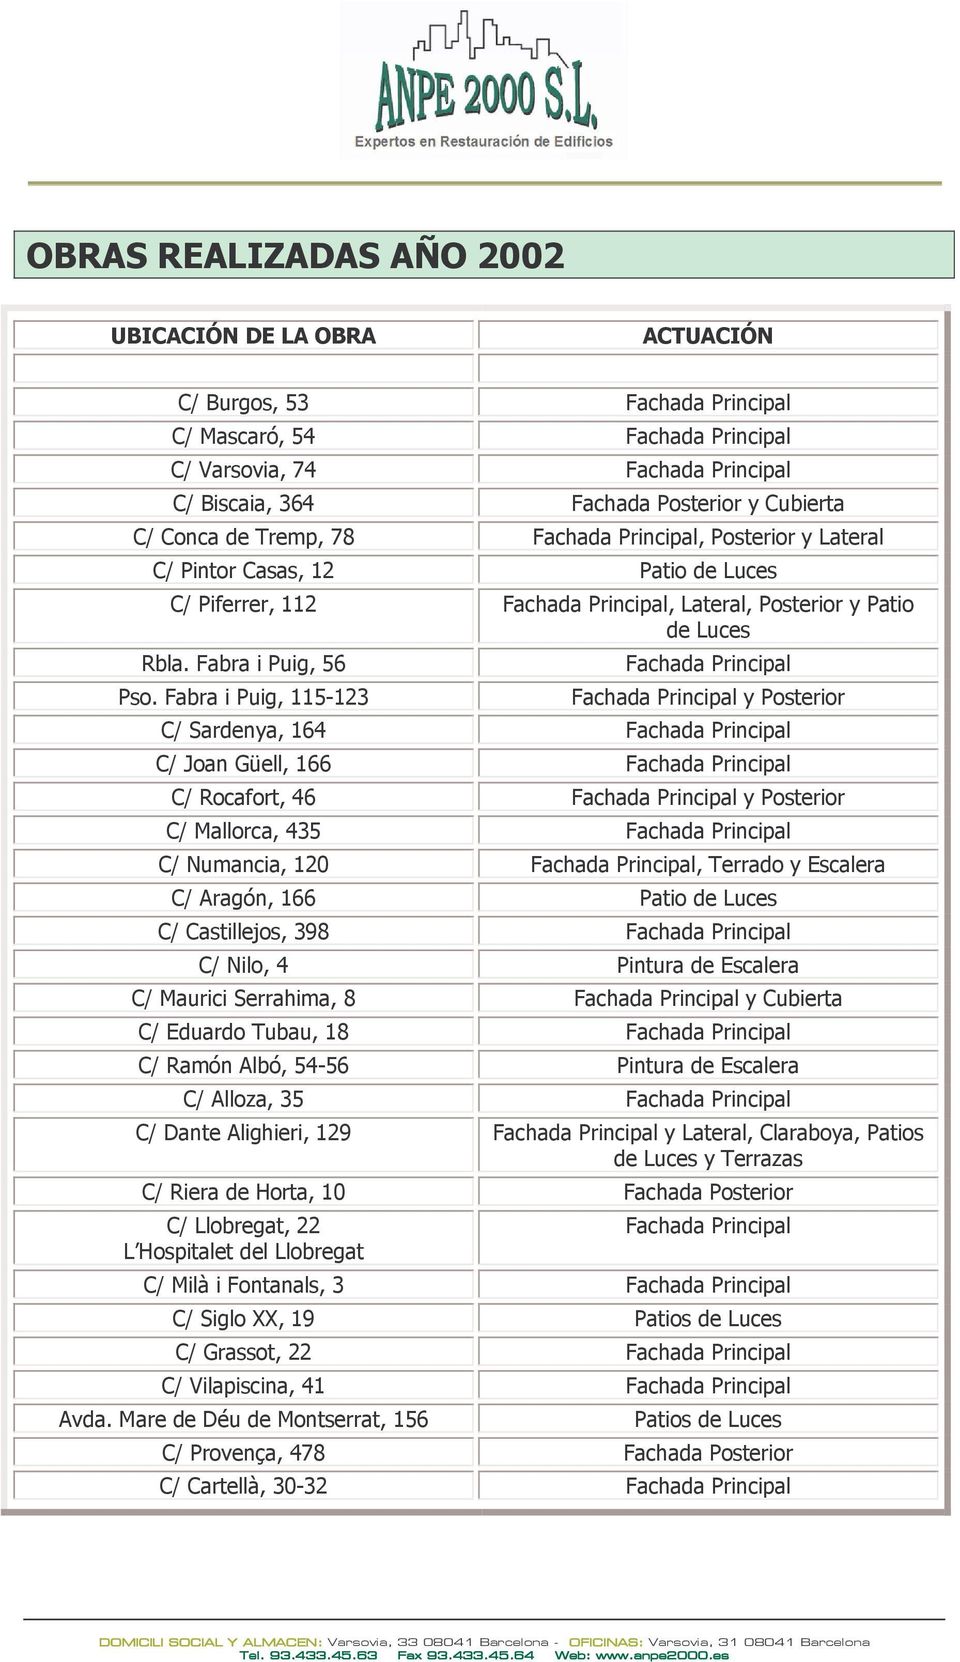 Fabra i Puig, 115-123 y Posterior C/ Sardenya, 164 C/ Joan Güell, 166 C/ Rocafort, 46 y Posterior C/ Mallorca, 435 C/ Numancia, 120, Terrado y Escalera C/ Aragón, 166 Patio de Luces C/ Castillejos,